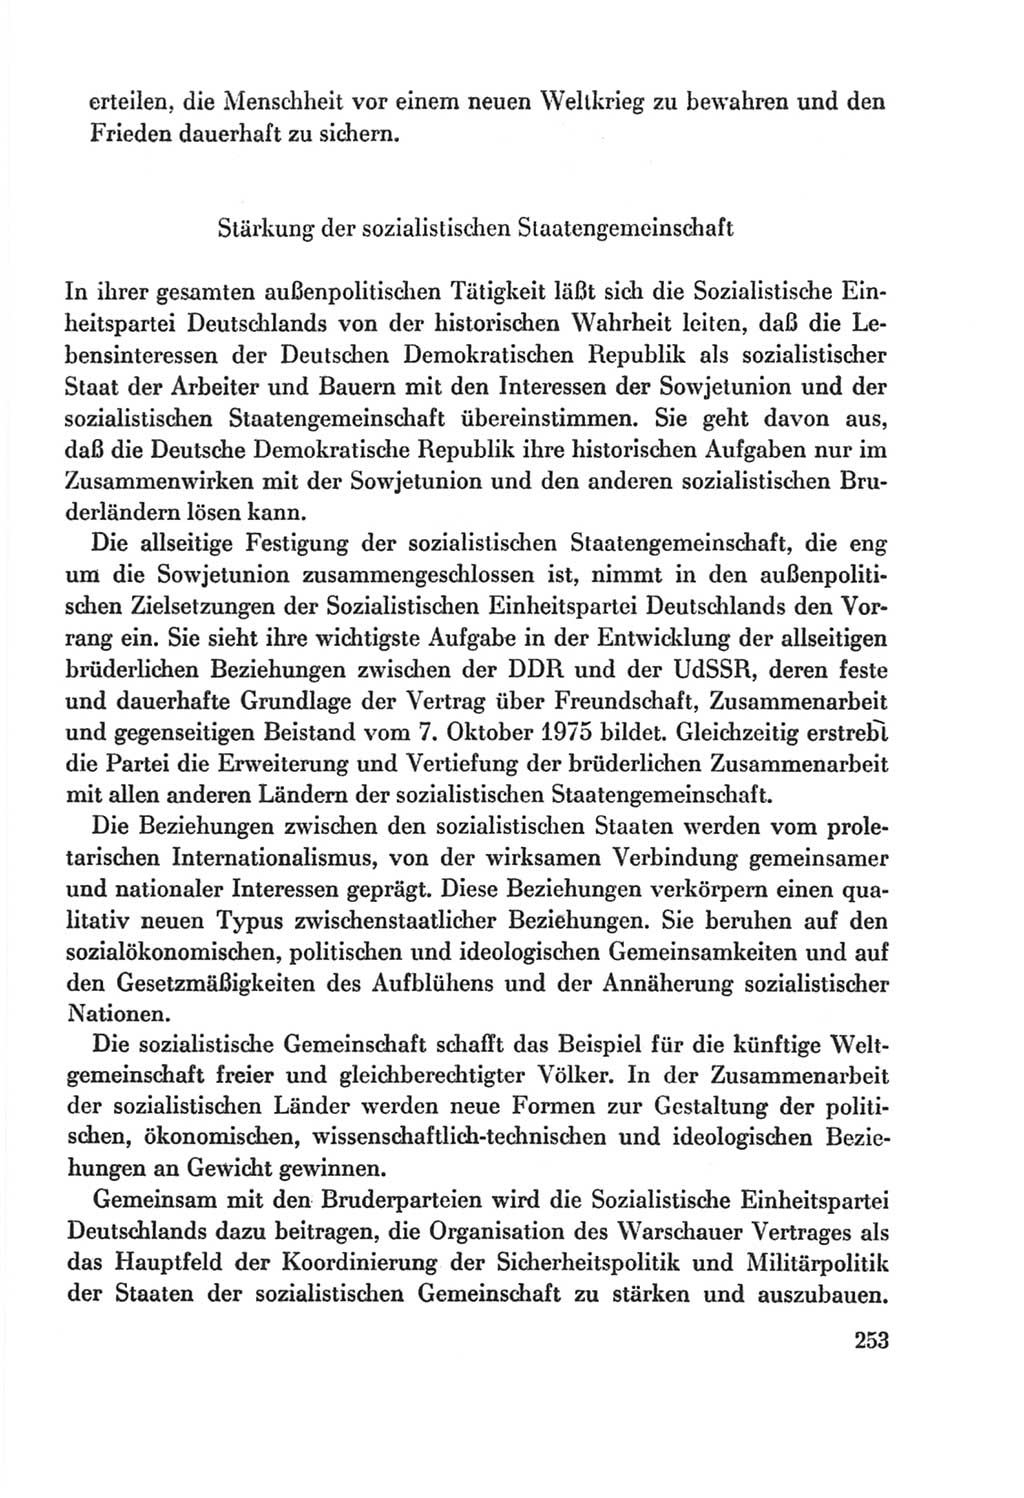 Protokoll der Verhandlungen des Ⅸ. Parteitages der Sozialistischen Einheitspartei Deutschlands (SED) [Deutsche Demokratische Republik (DDR)] 1976, Band 2, Seite 253 (Prot. Verh. Ⅸ. PT SED DDR 1976, Bd. 2, S. 253)